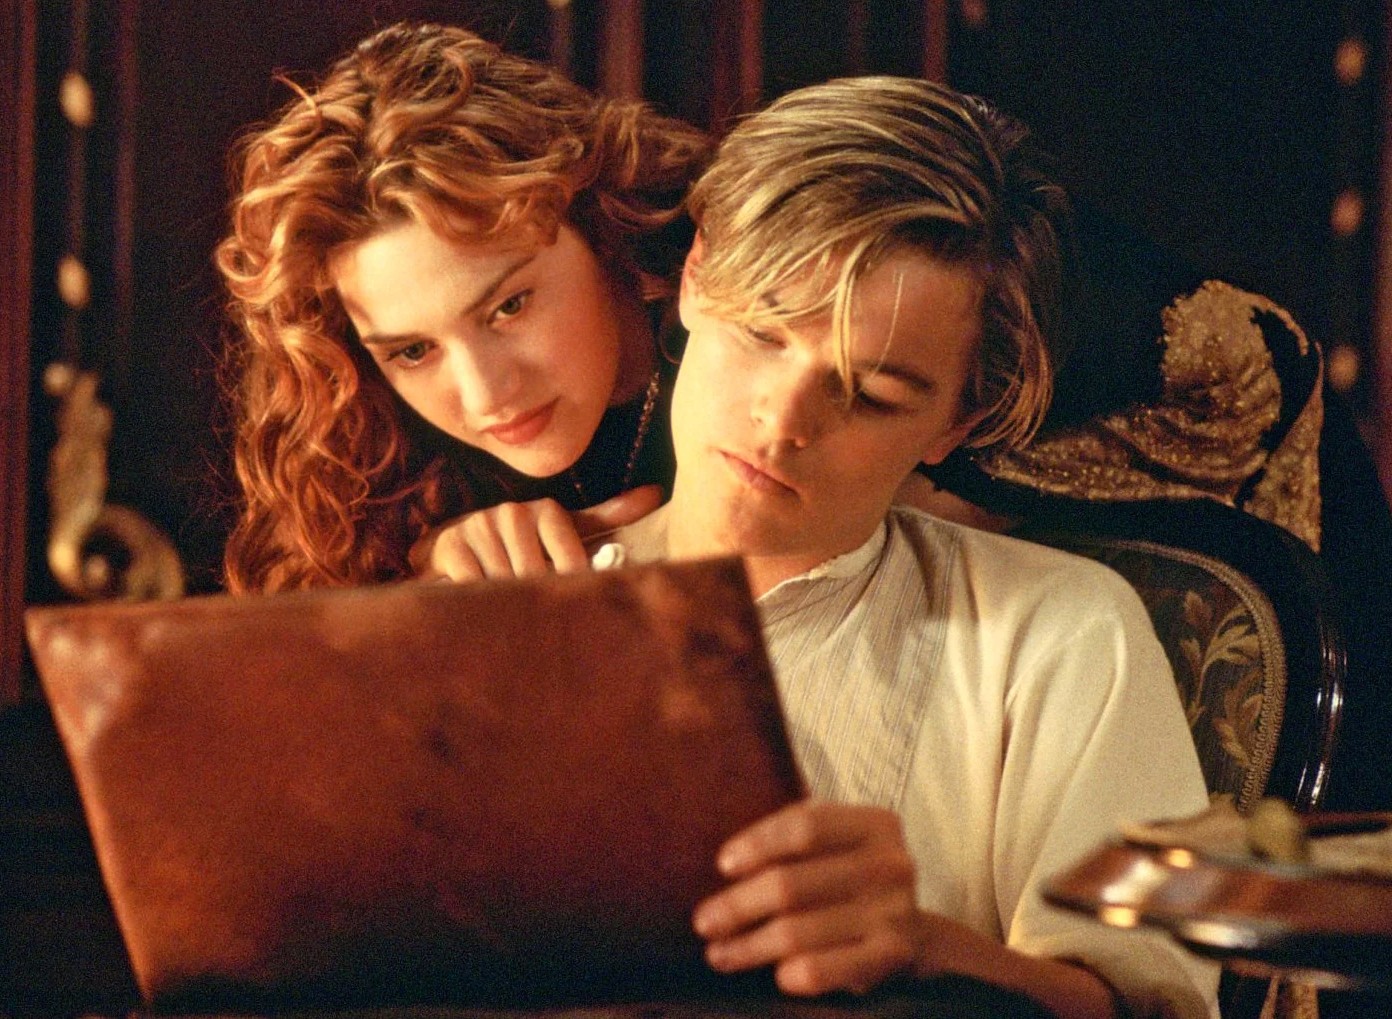 Sao "Titanic" ngày ấy - bây giờ: Leonardo DiCaprio đời tư ồn ào, chỉ yêu bạn gái dưới 25 tuổi - 4